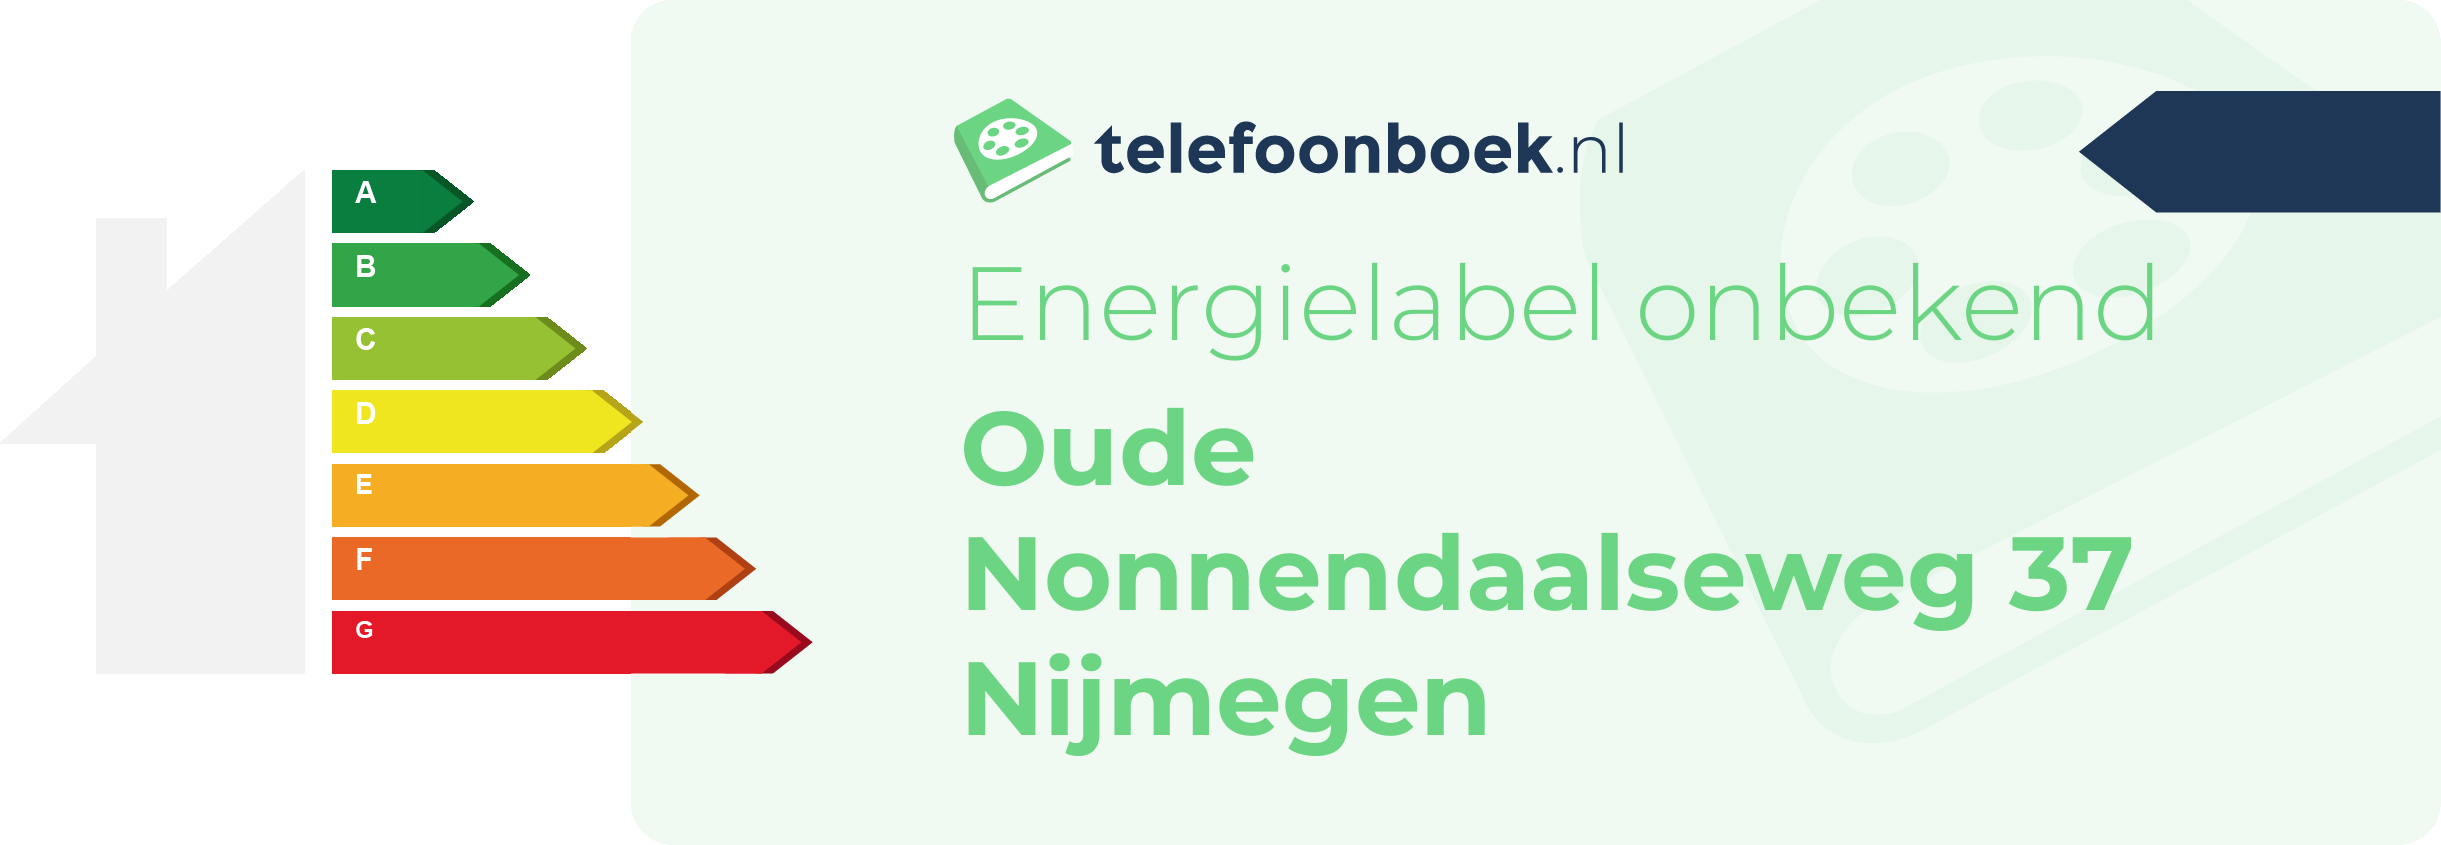 Energielabel Oude Nonnendaalseweg 37 Nijmegen